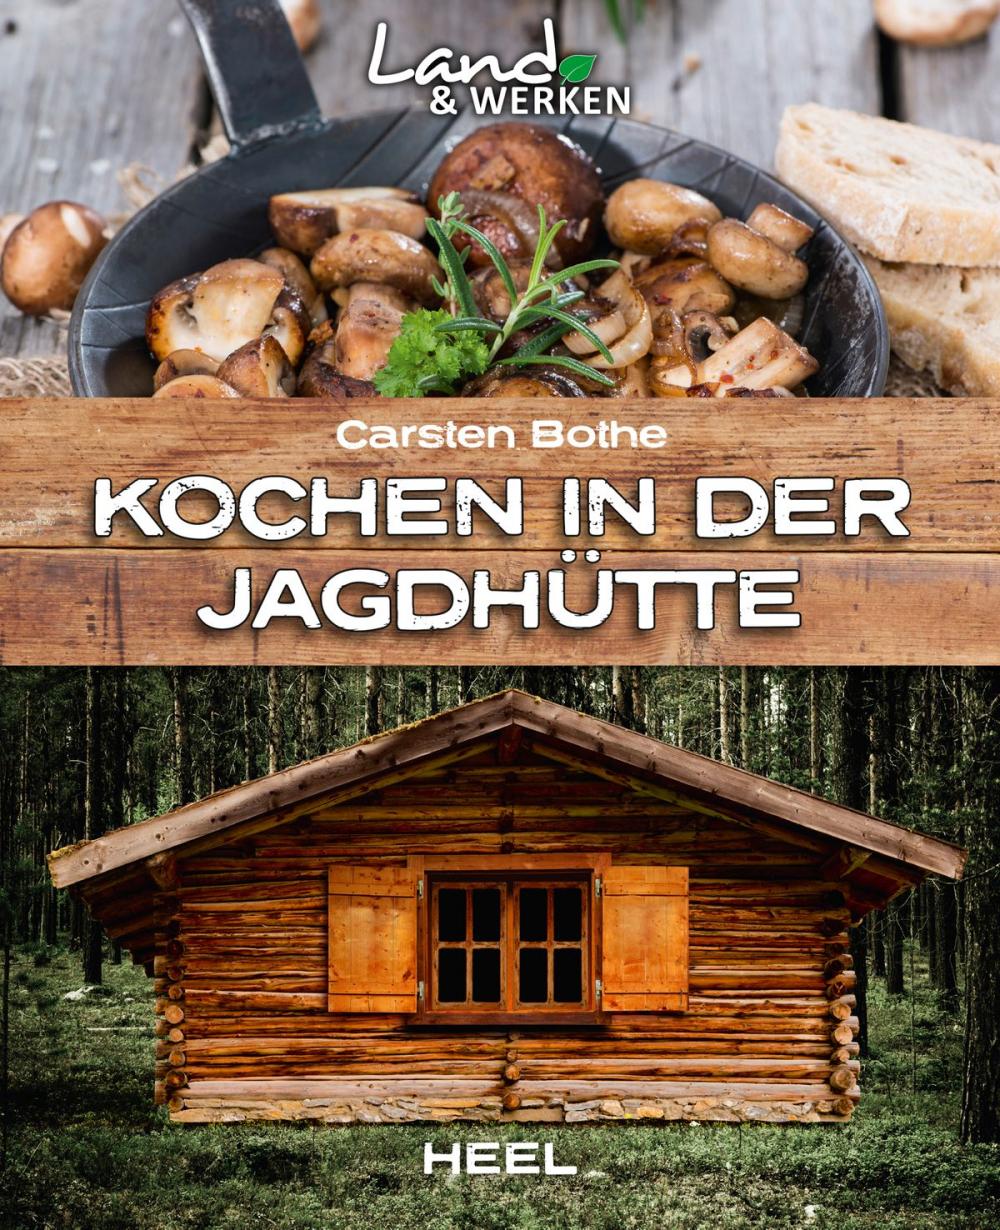 Big bigCover of Kochen in der Jagdhütte